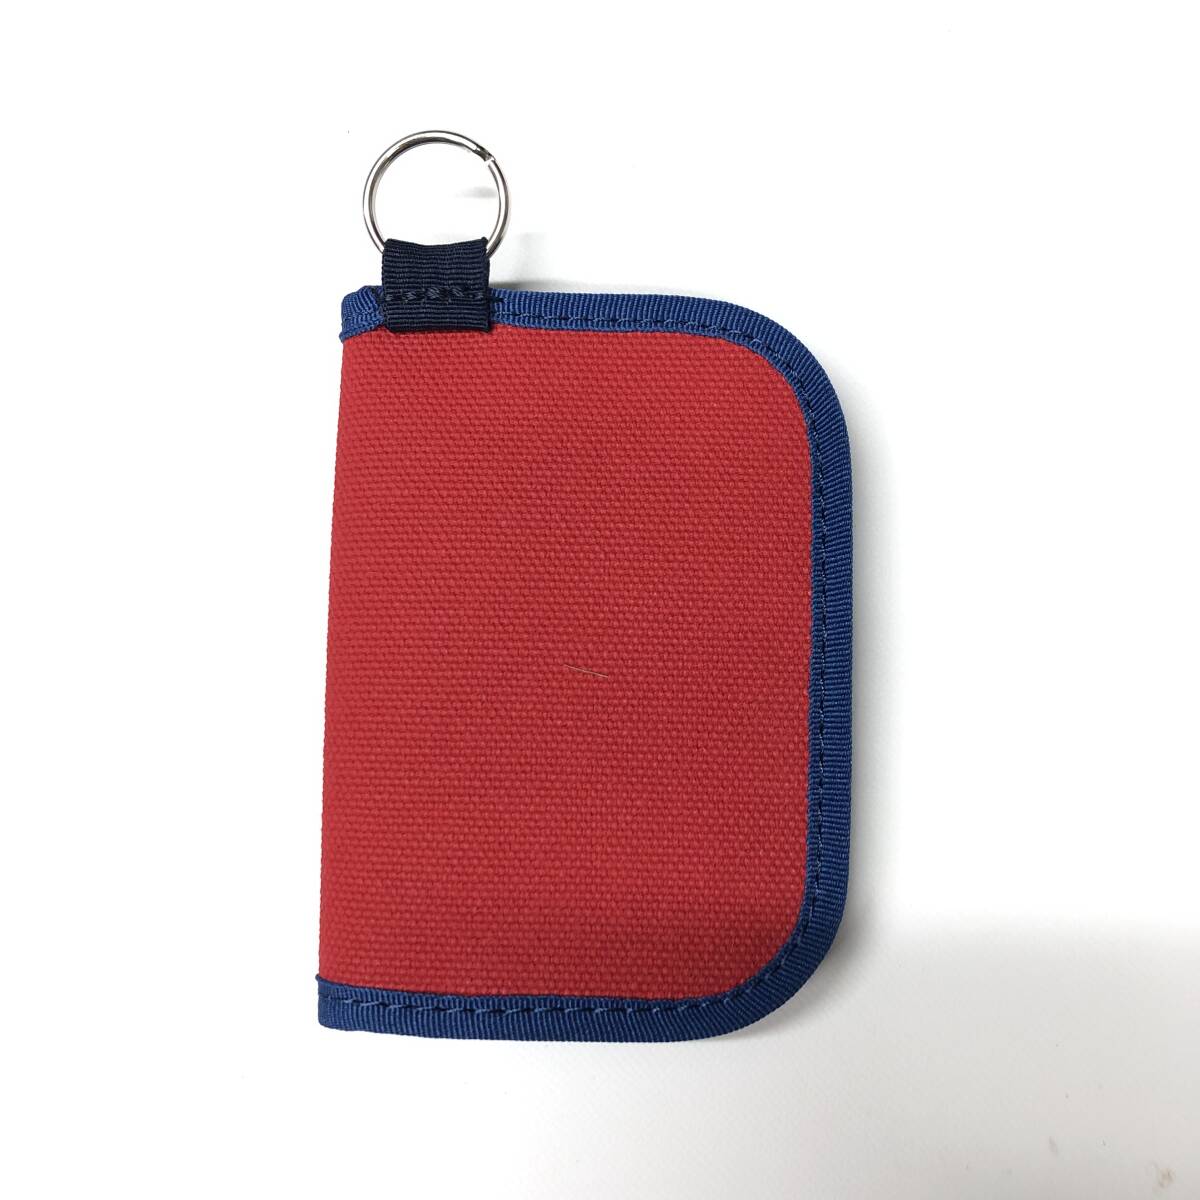  собака  штамп   сумка   производство  место   карточка  кейс   мульти  цвет  SD карточка  прием   вещь  